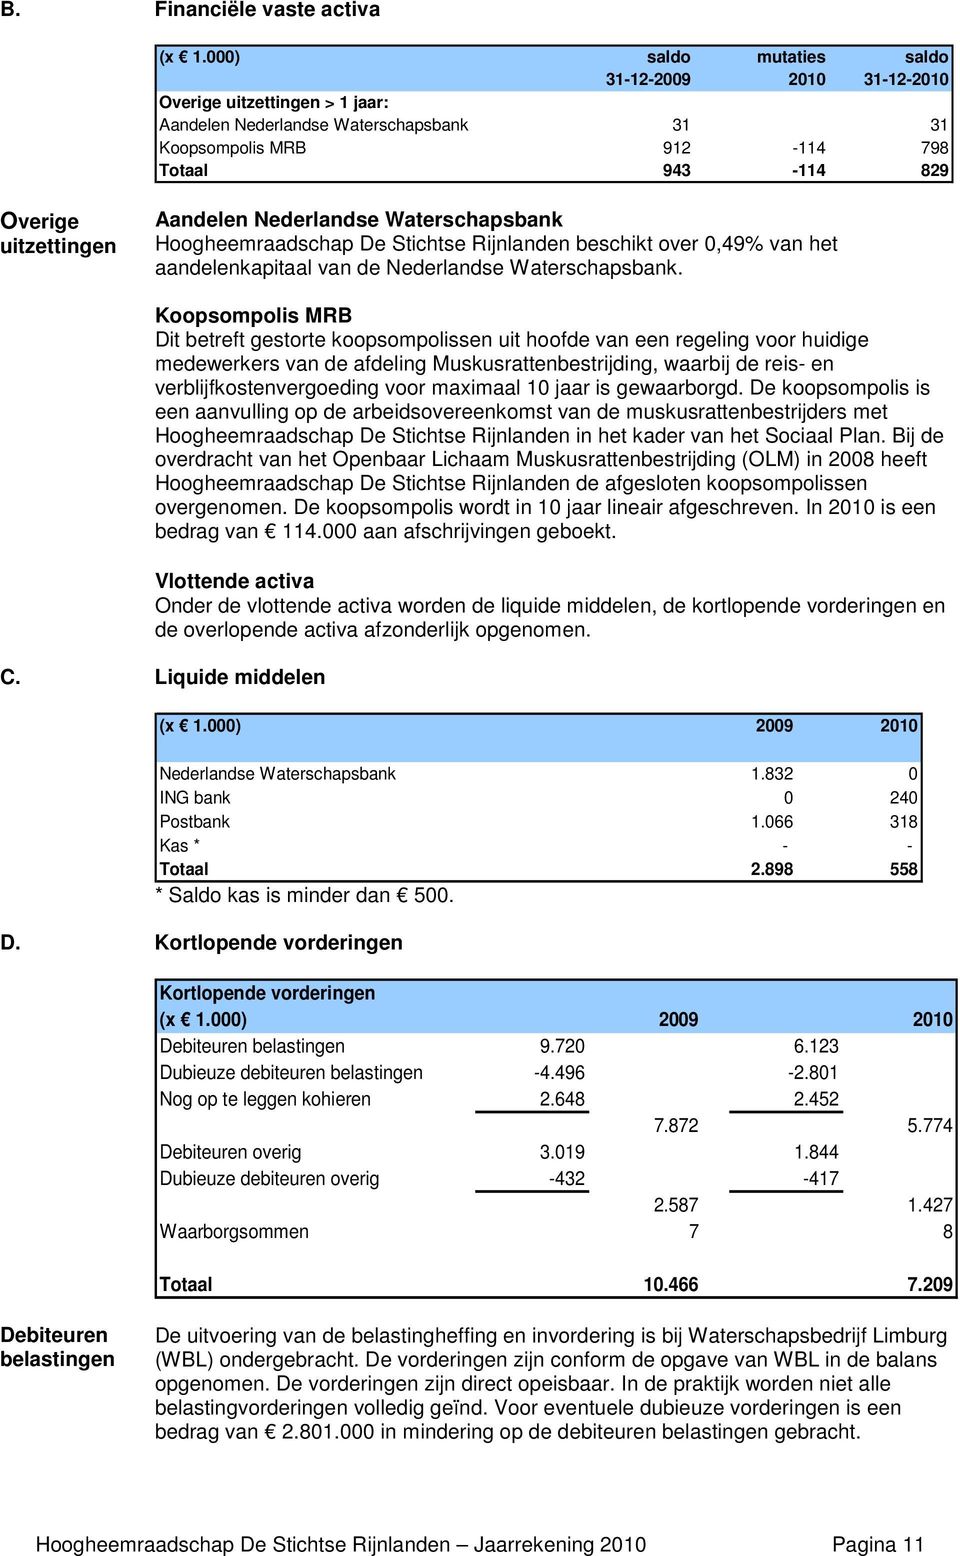 Aandelen Nederlandse Waterschapsbank Hoogheemraadschap De Stichtse Rijnlanden beschikt over 0,49% van het aandelenkapitaal van de Nederlandse Waterschapsbank.